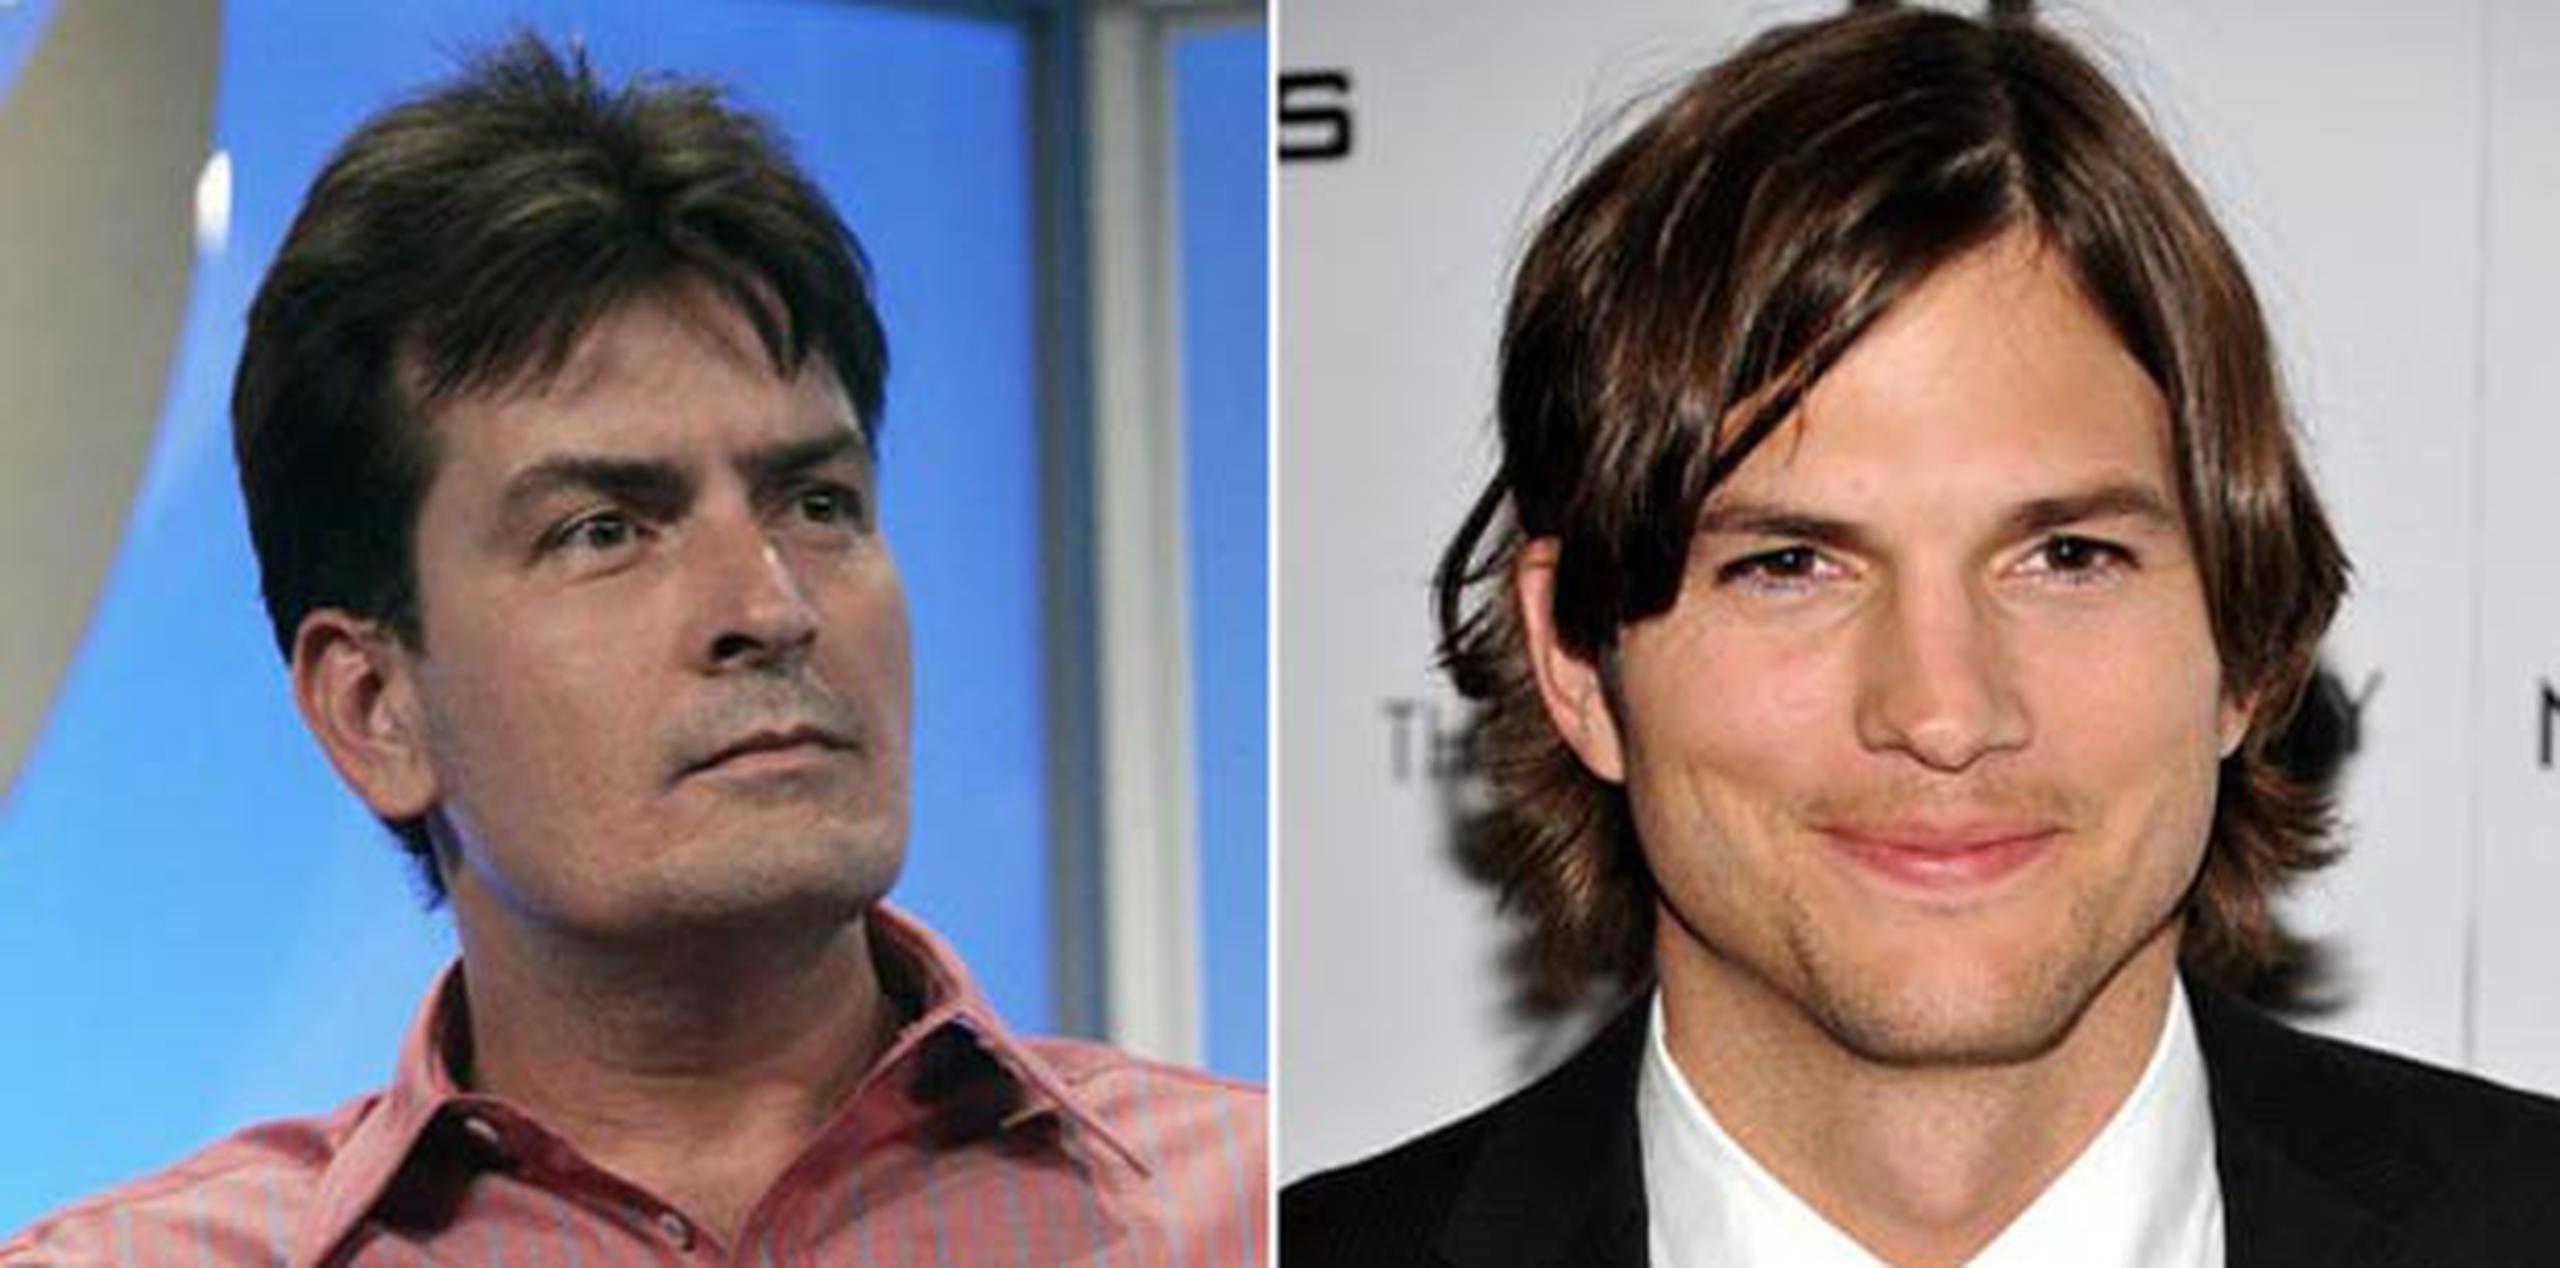 Charlie Sheen fue despedido de “Two and a Half Men” hace tres años, lo que le brindó a Ashton Kutcher la oportunidad de participar en el programa televisivo.  (Archivo)